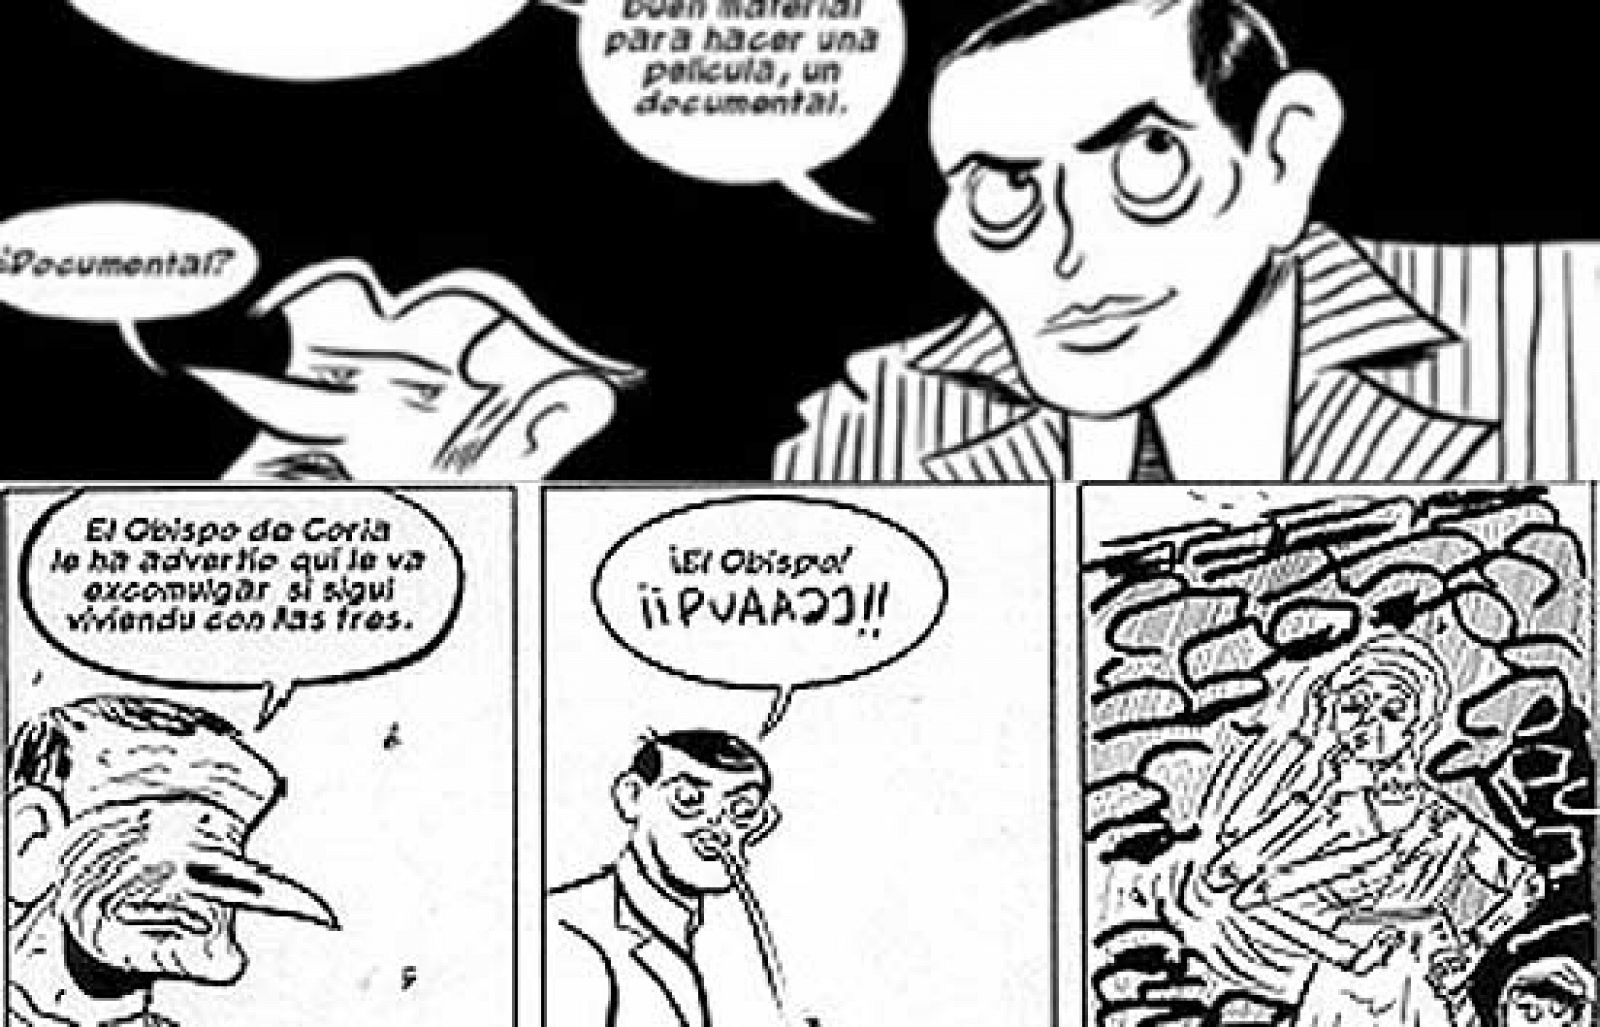 Un cómic descubre el rodaje de Buñuel en las Hurdes